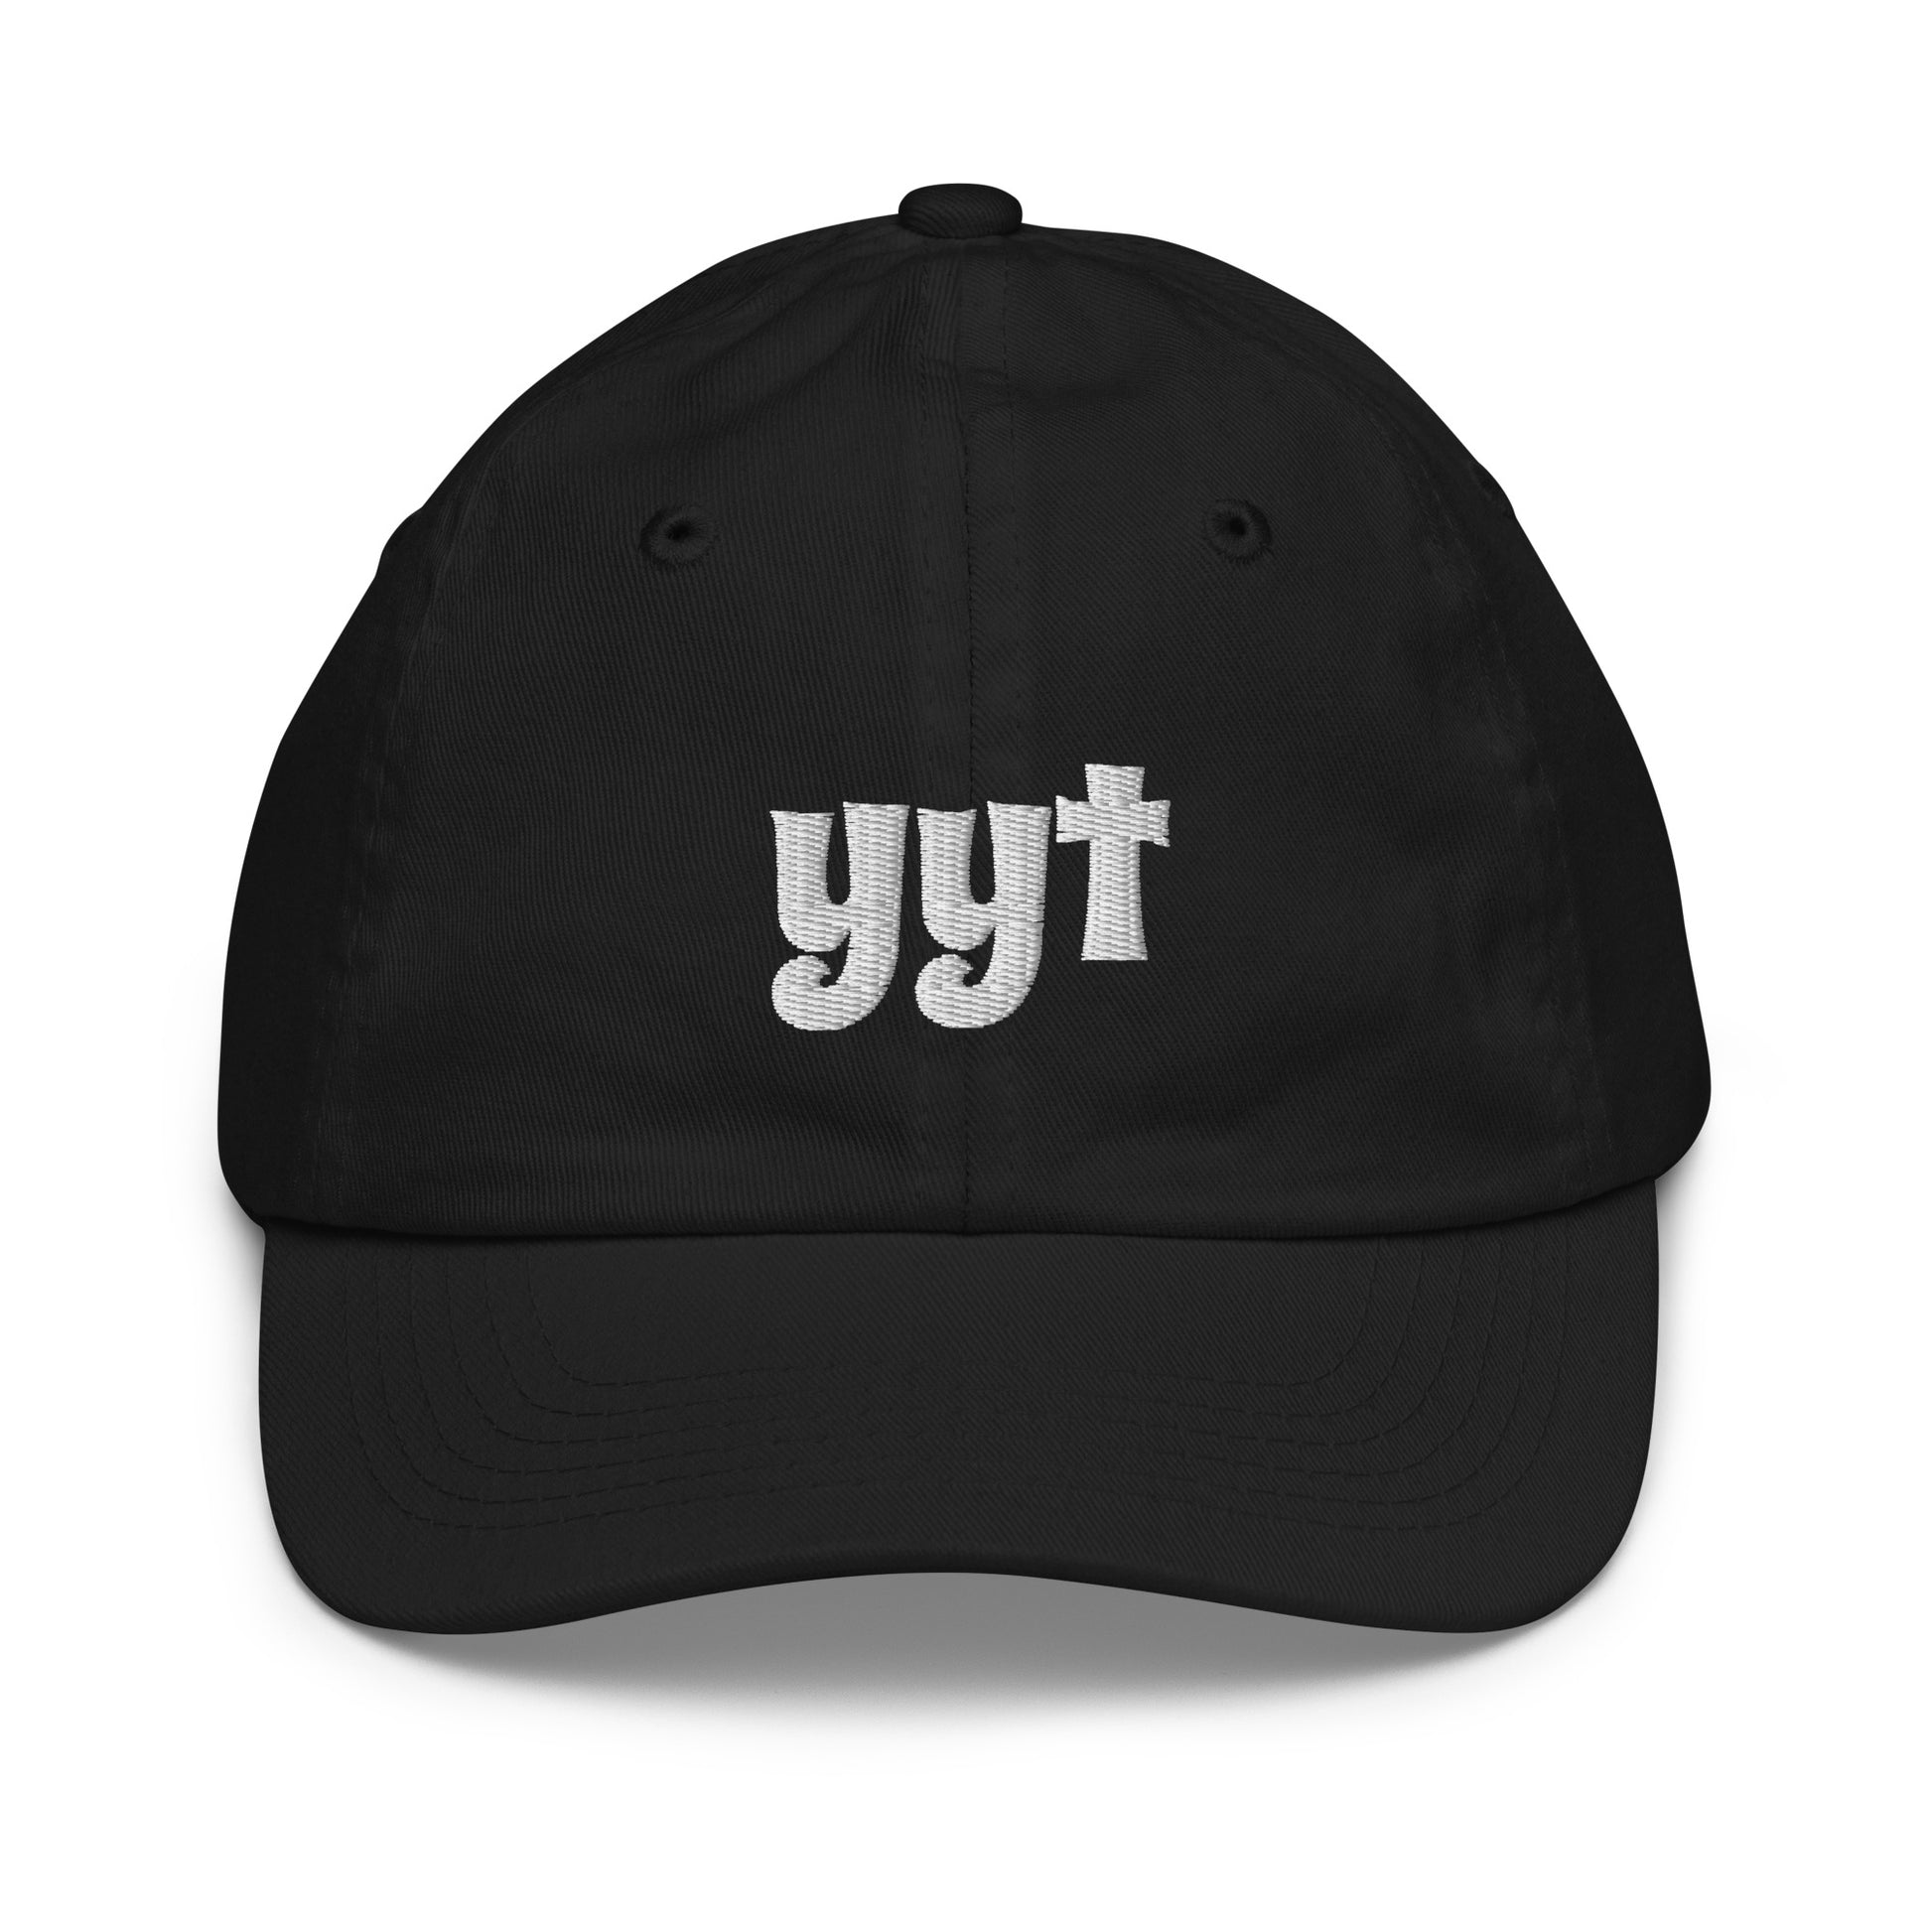 Groovy Kid's Baseball Cap - White • YYT St. John's • YHM Designs - Image 10